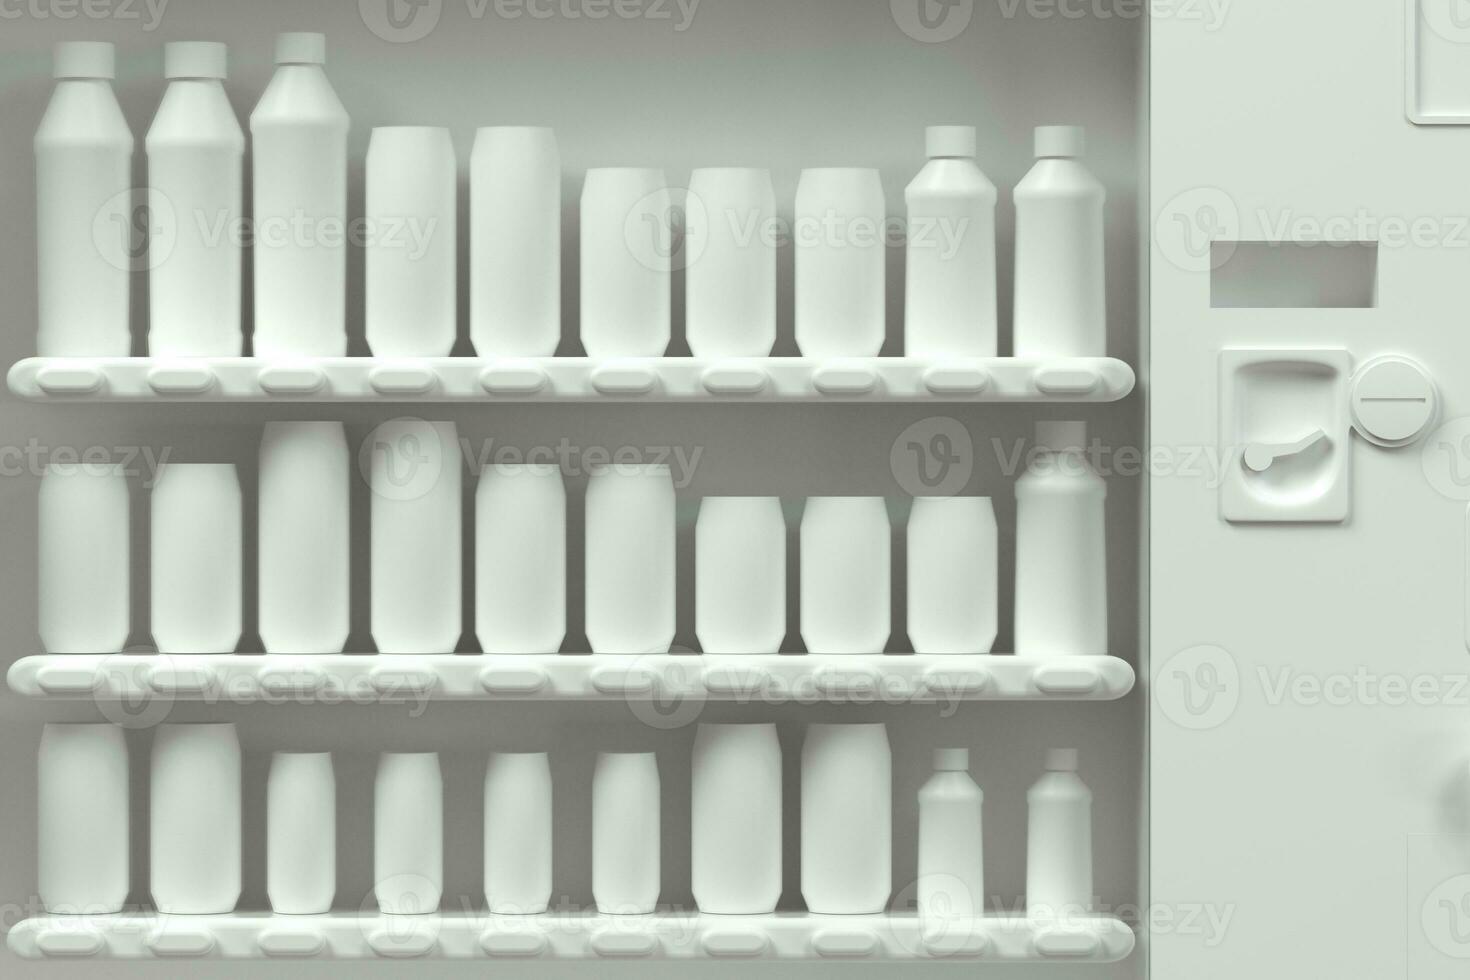 a branco modelo do vending máquina com branco fundo, 3d Renderização. foto